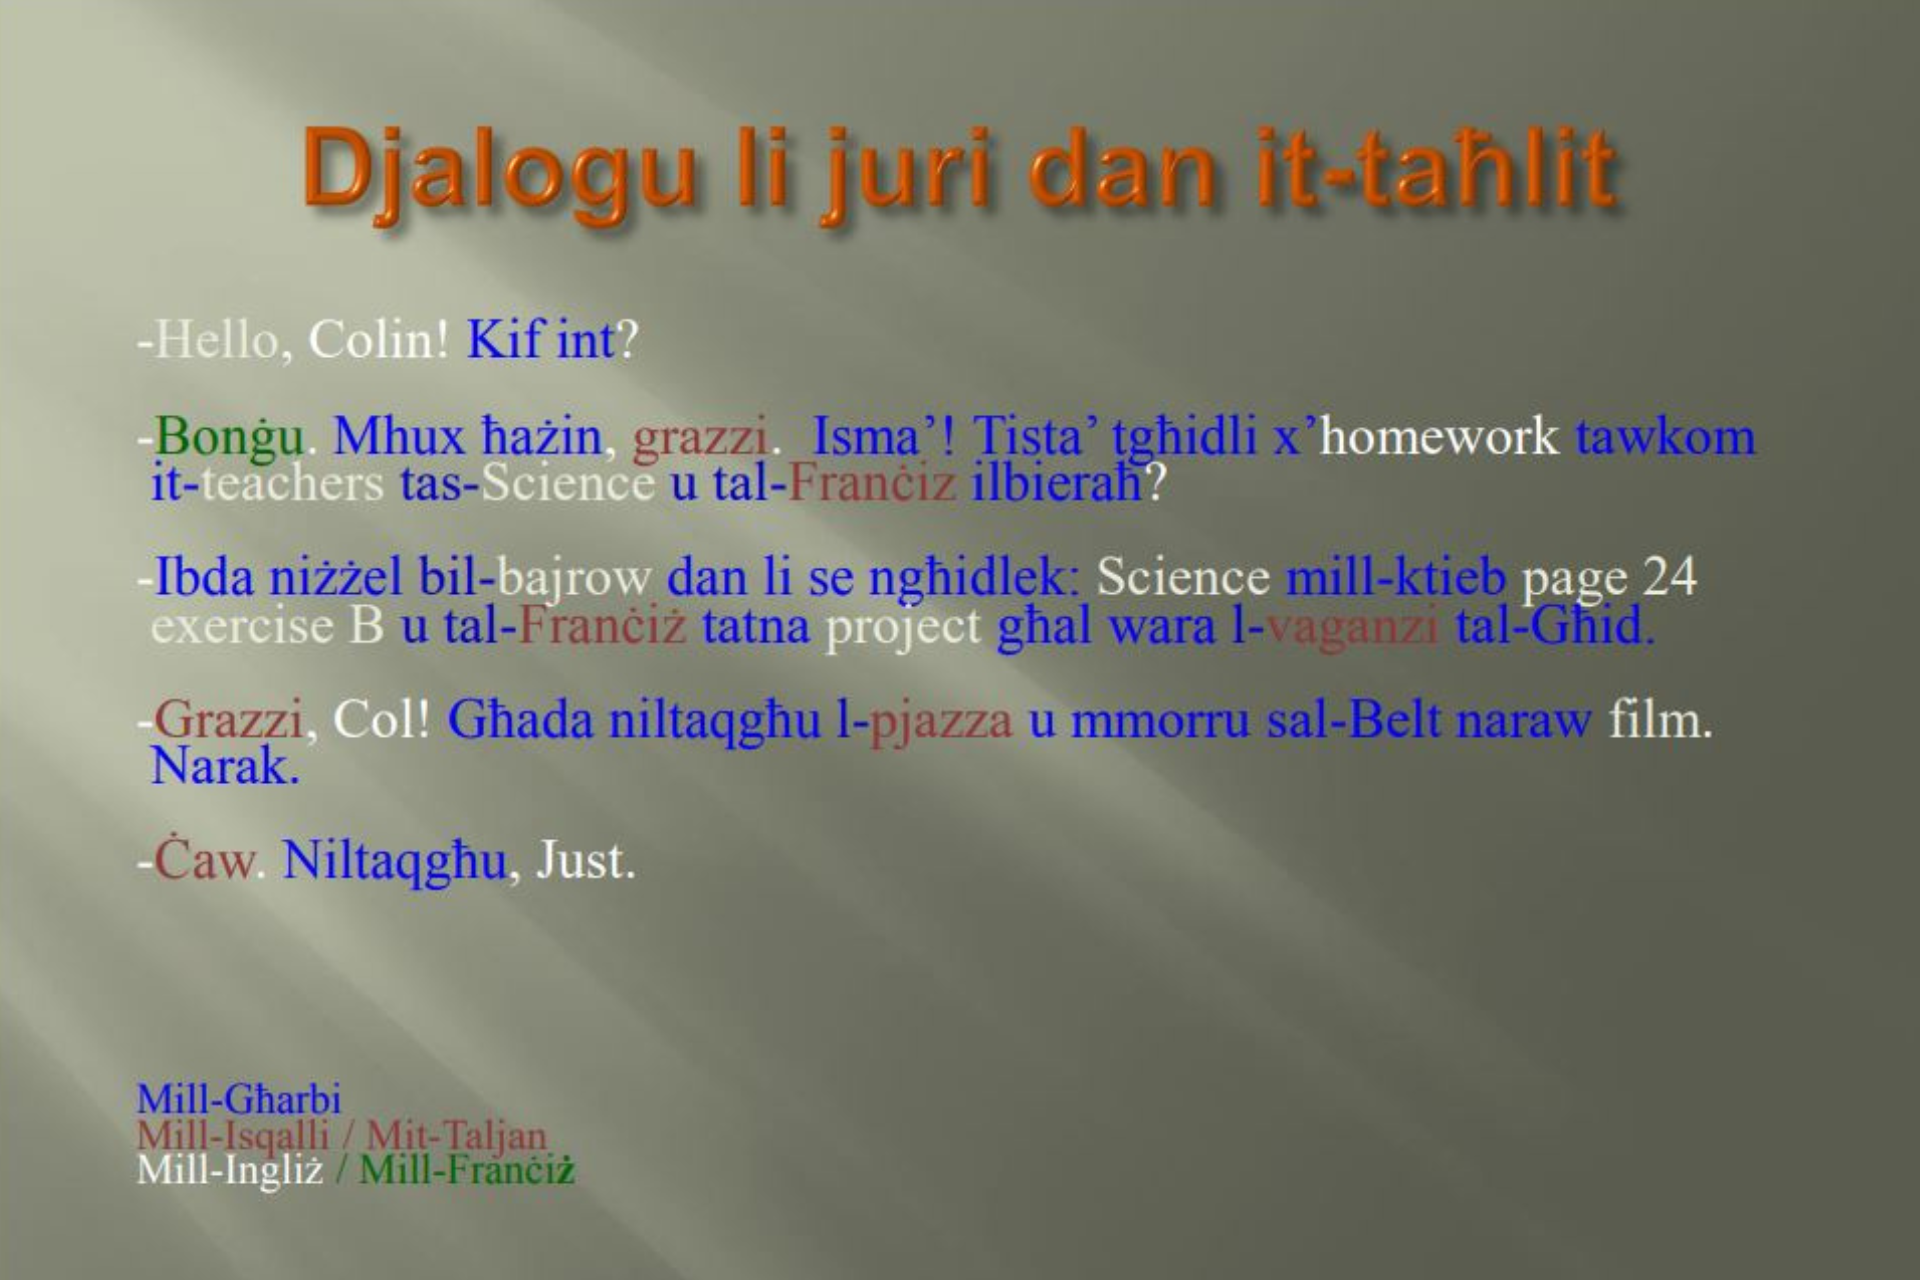 Short dialogue in Maltese text